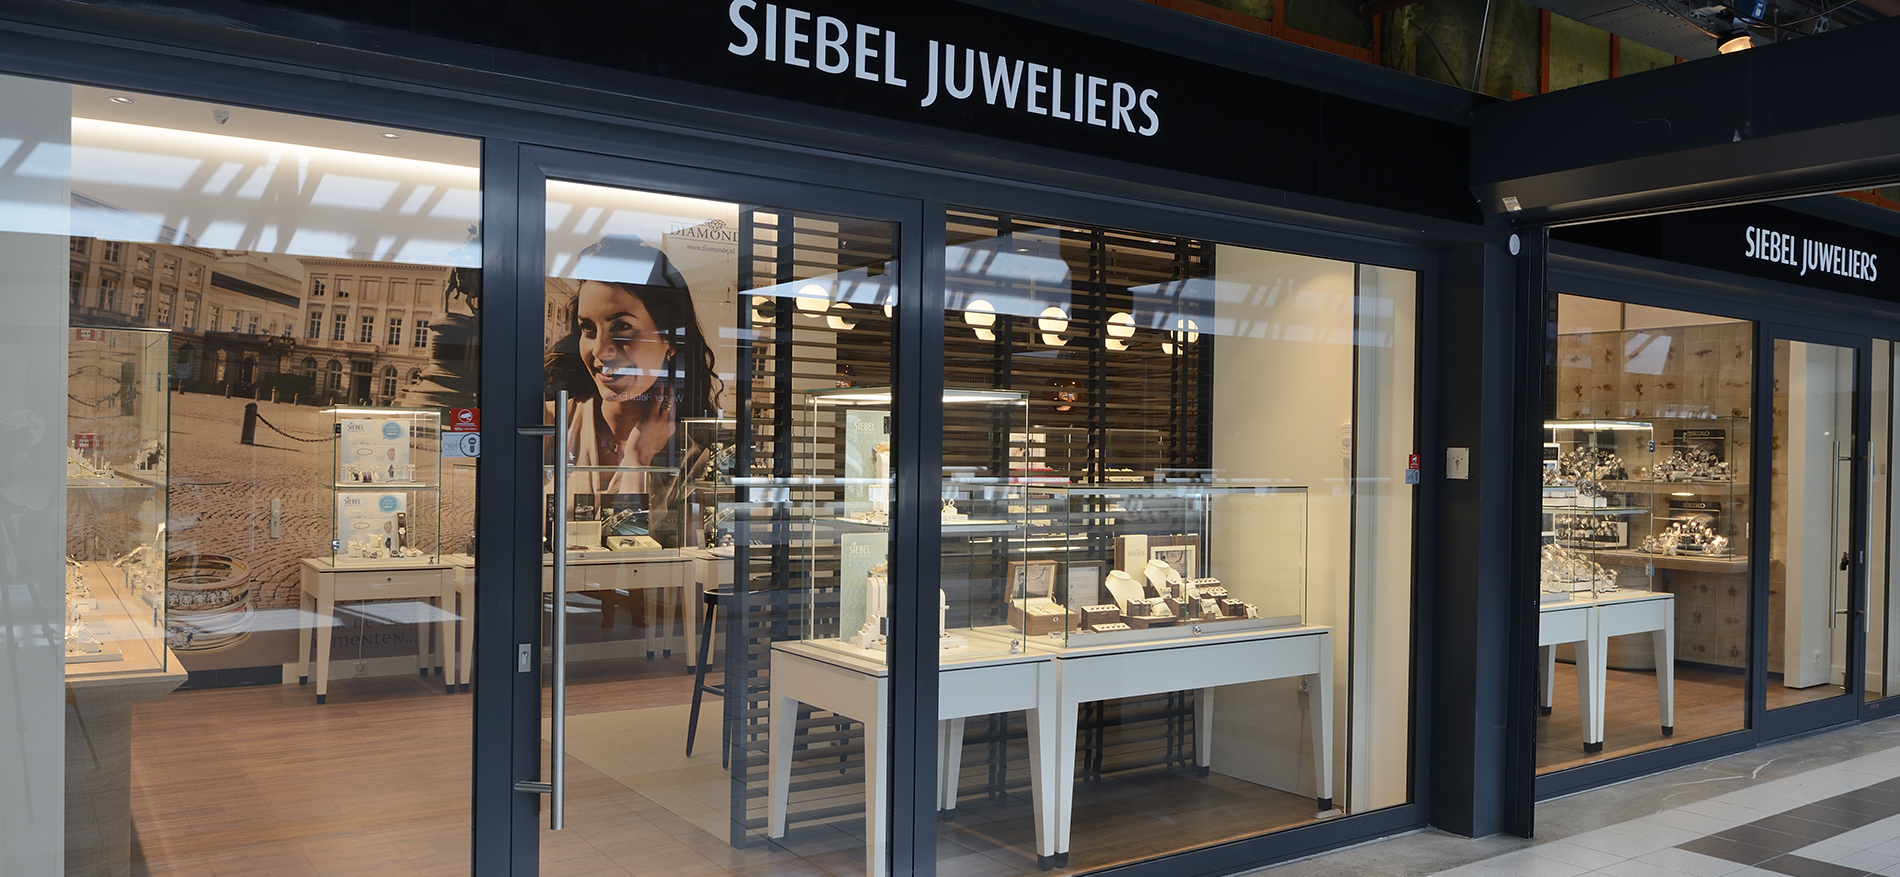 Winkelinrichting Retail: Siebel Juweliers - 